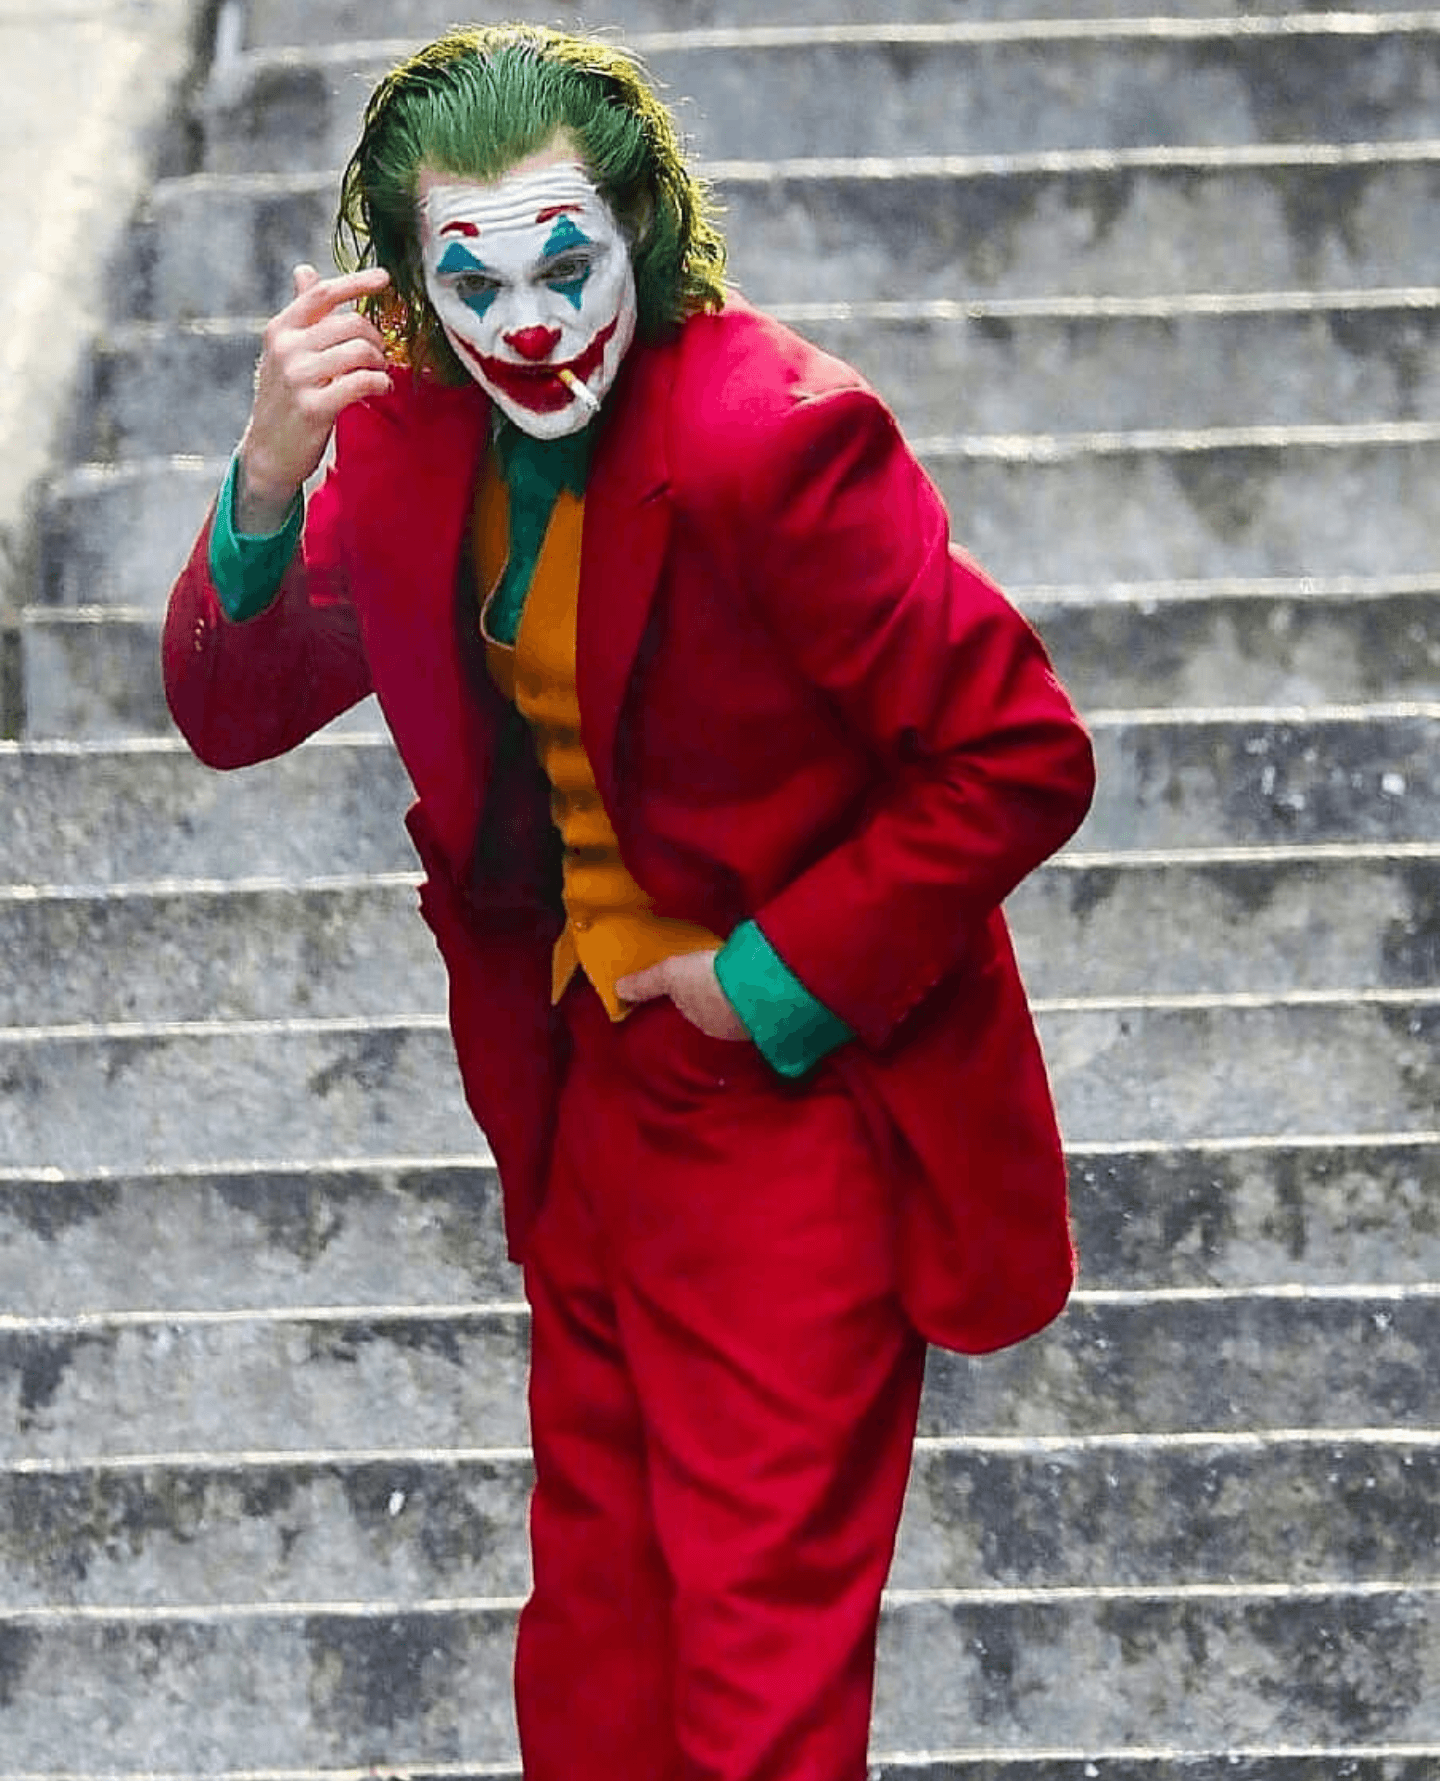 Joaquin Phoenix The Joker Movie 2019 Wallpapers - Wallpaper Cave